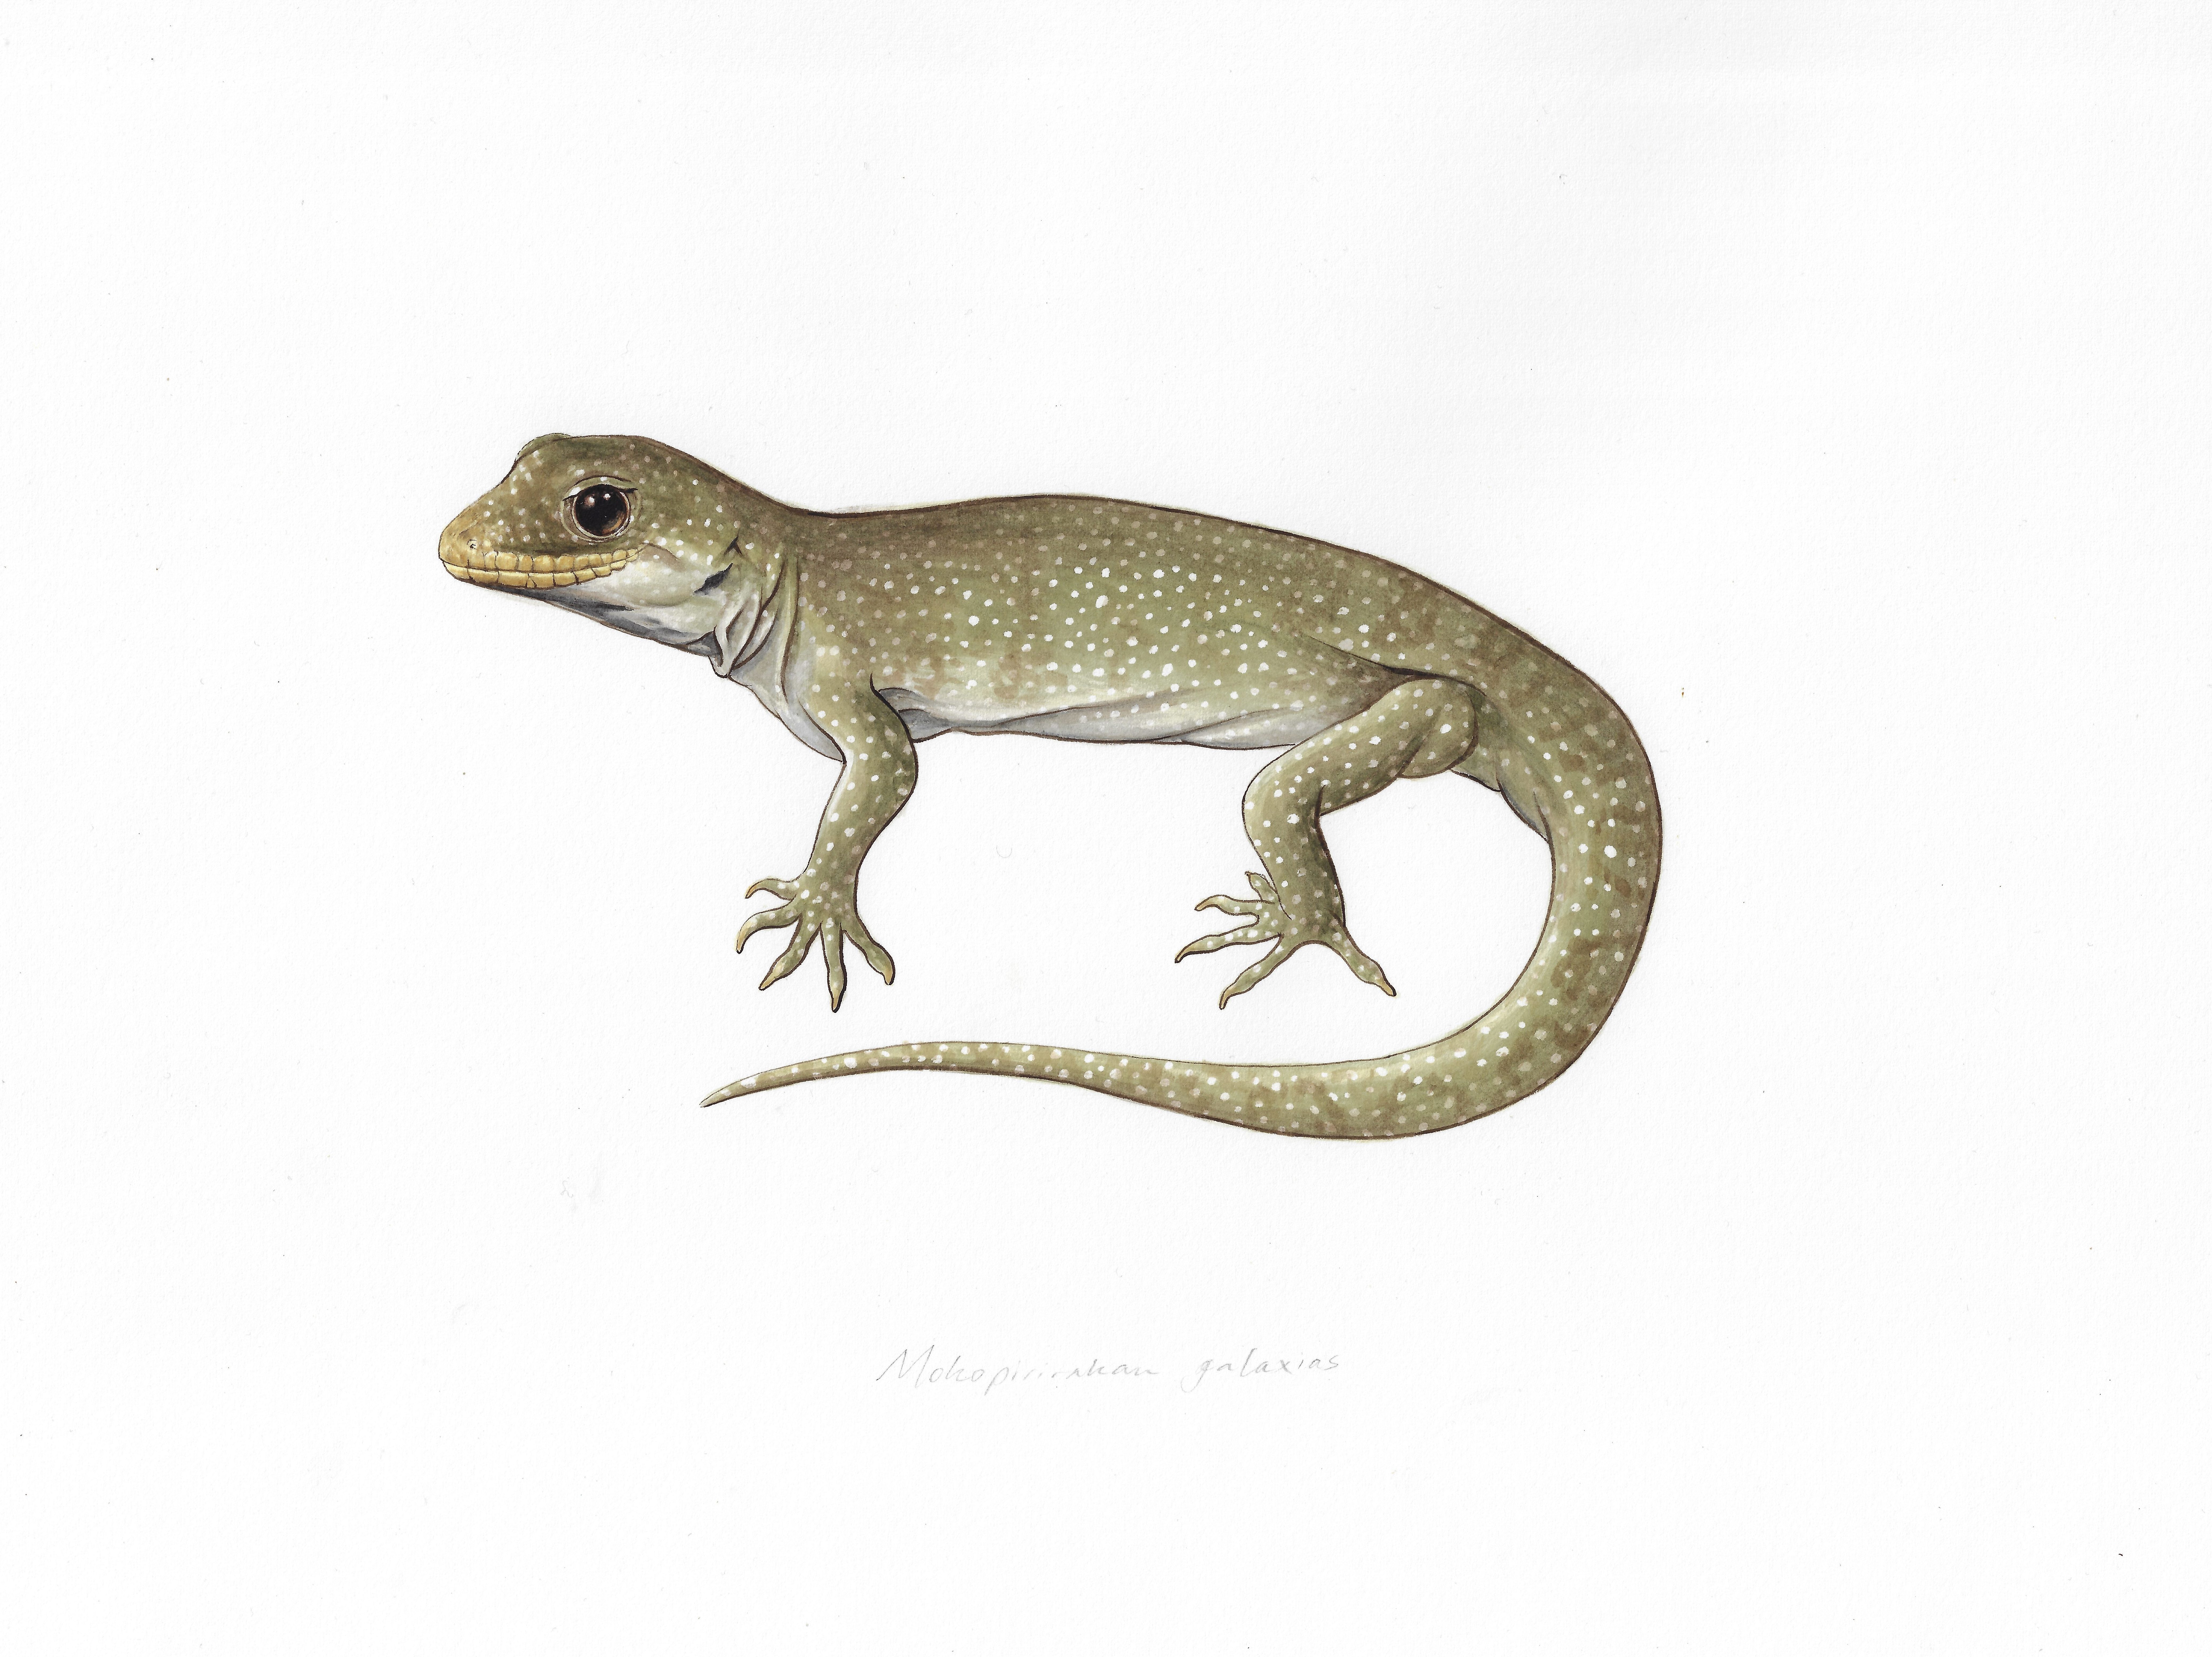 A painting of the hura te ao gecko